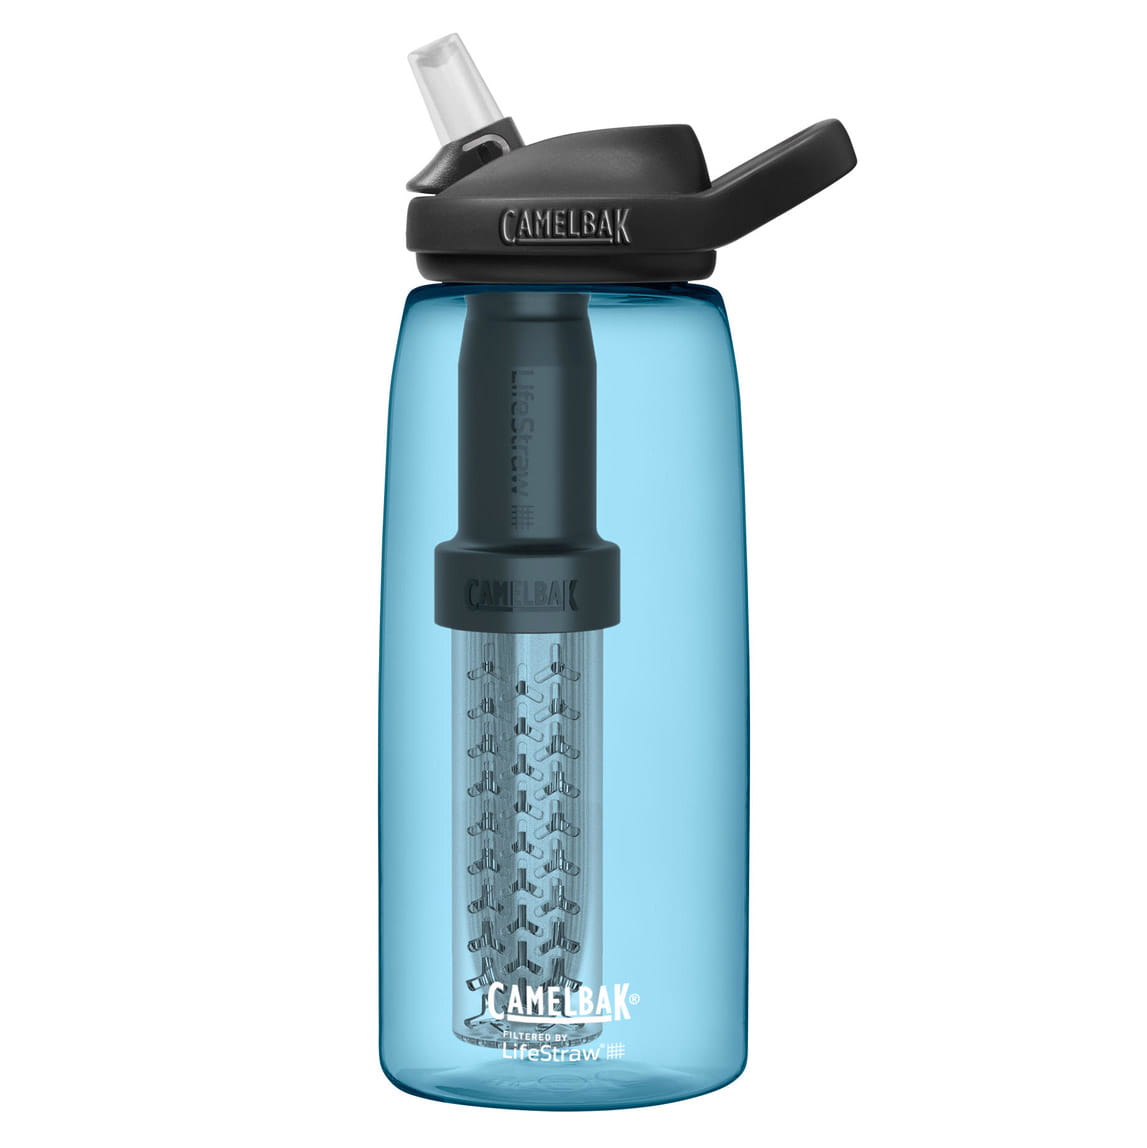 Camelbak Eddy+ LifeStraw Trinkflasche mit Wasserfilter